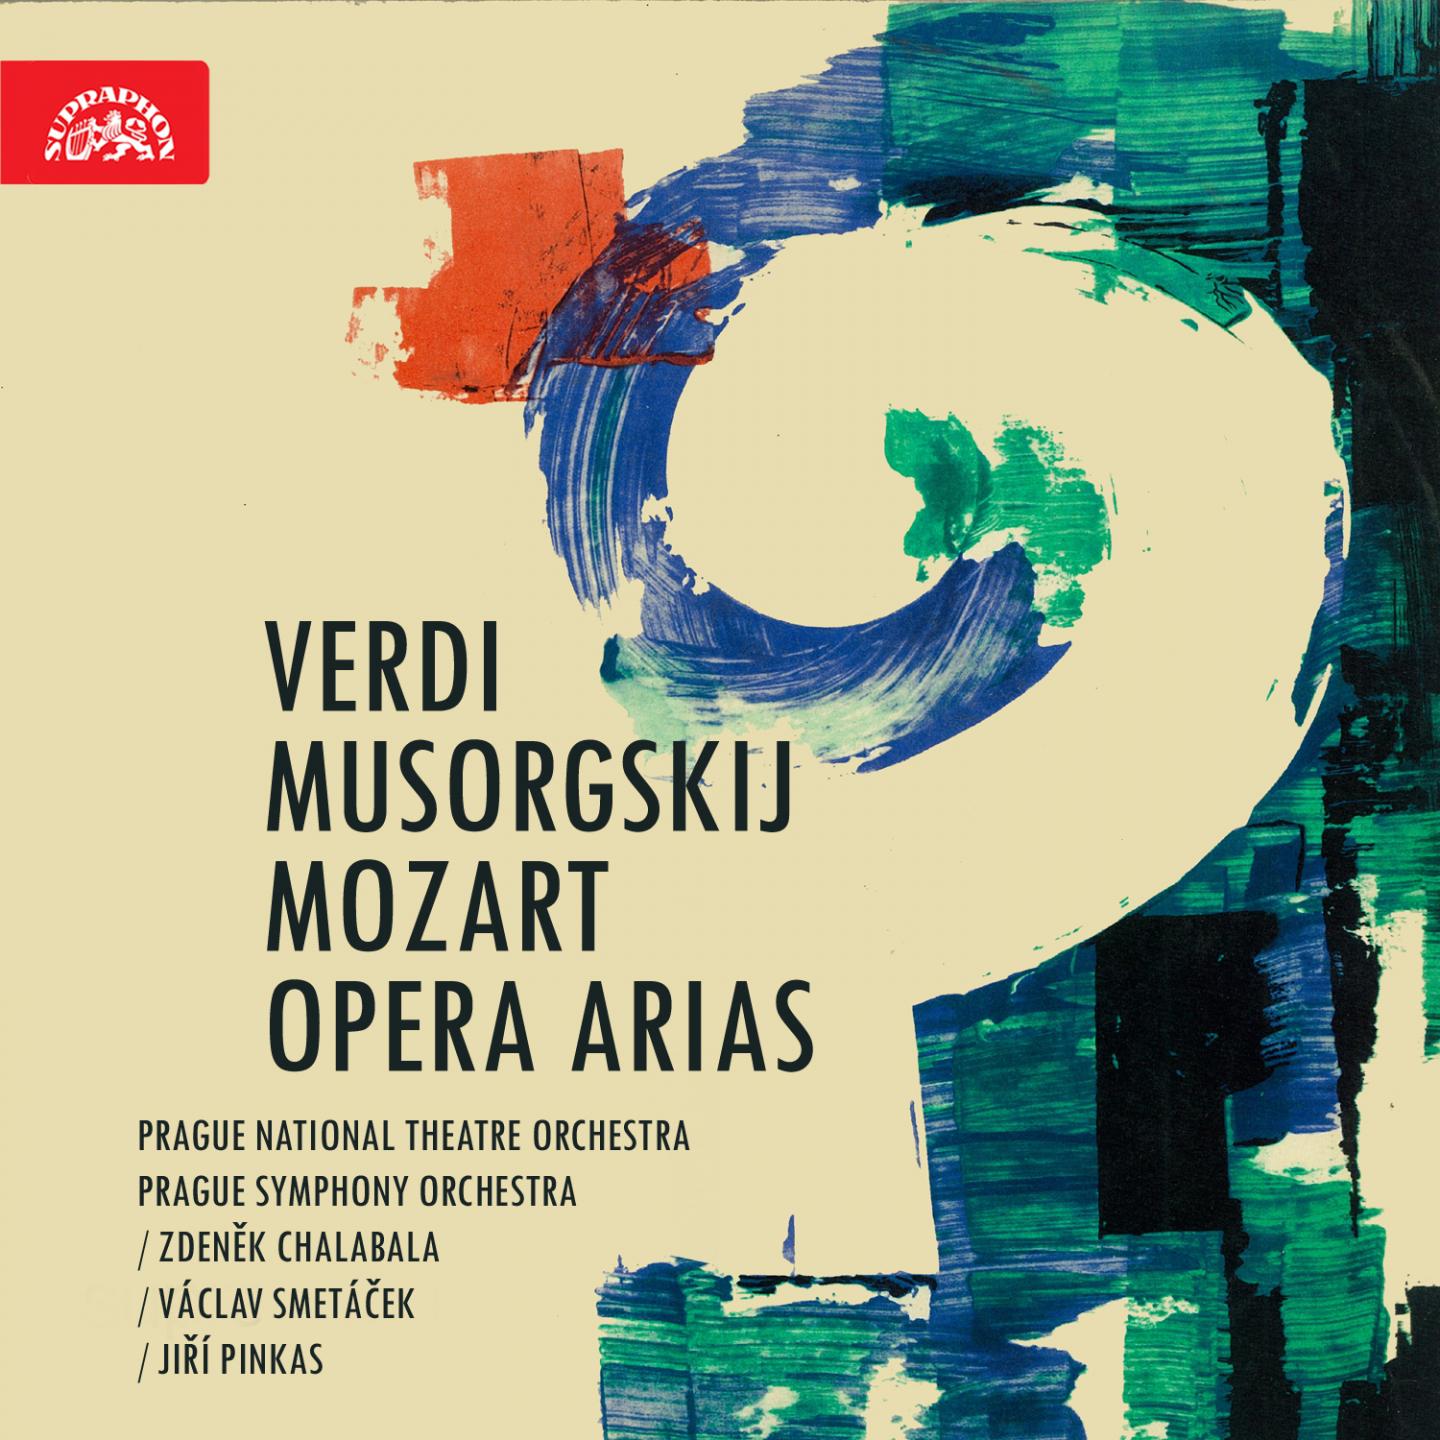 Verdi, Musorgskij, Mozart: Opera Arias